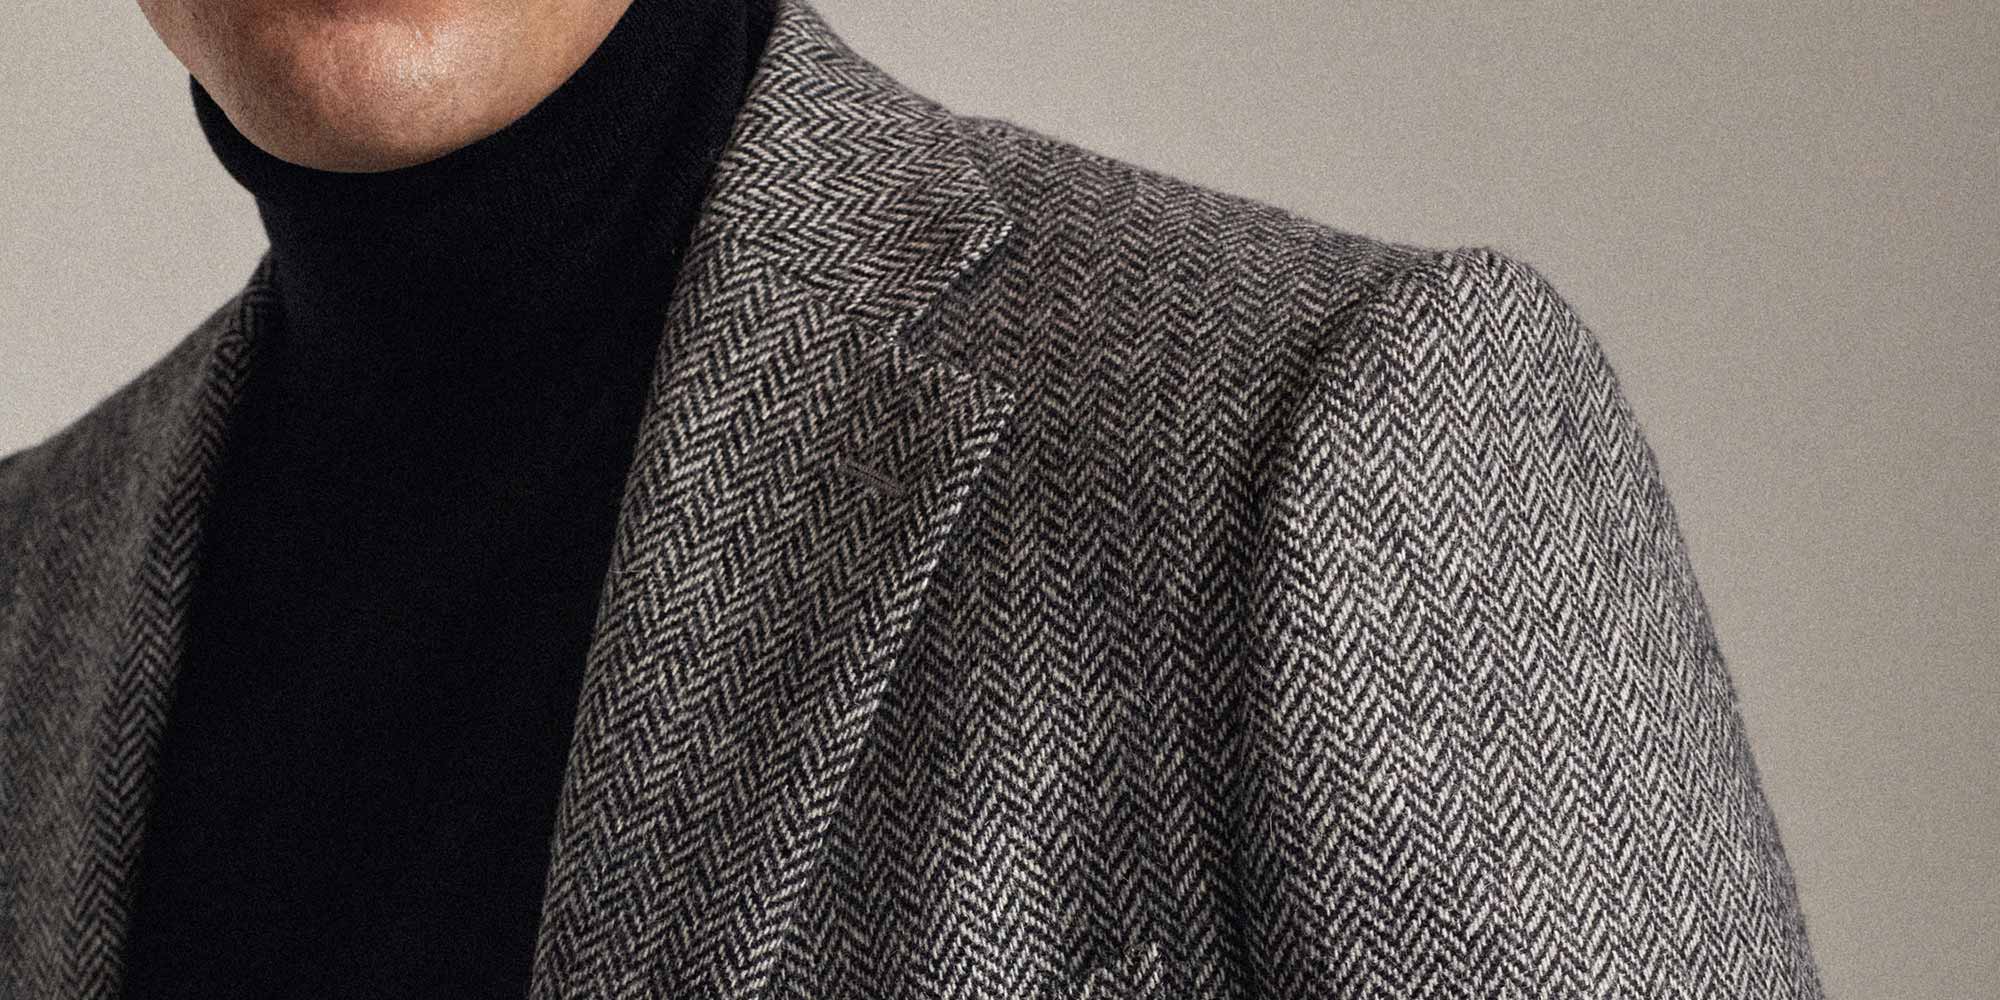 La veste en tweed à chevrons gris noir